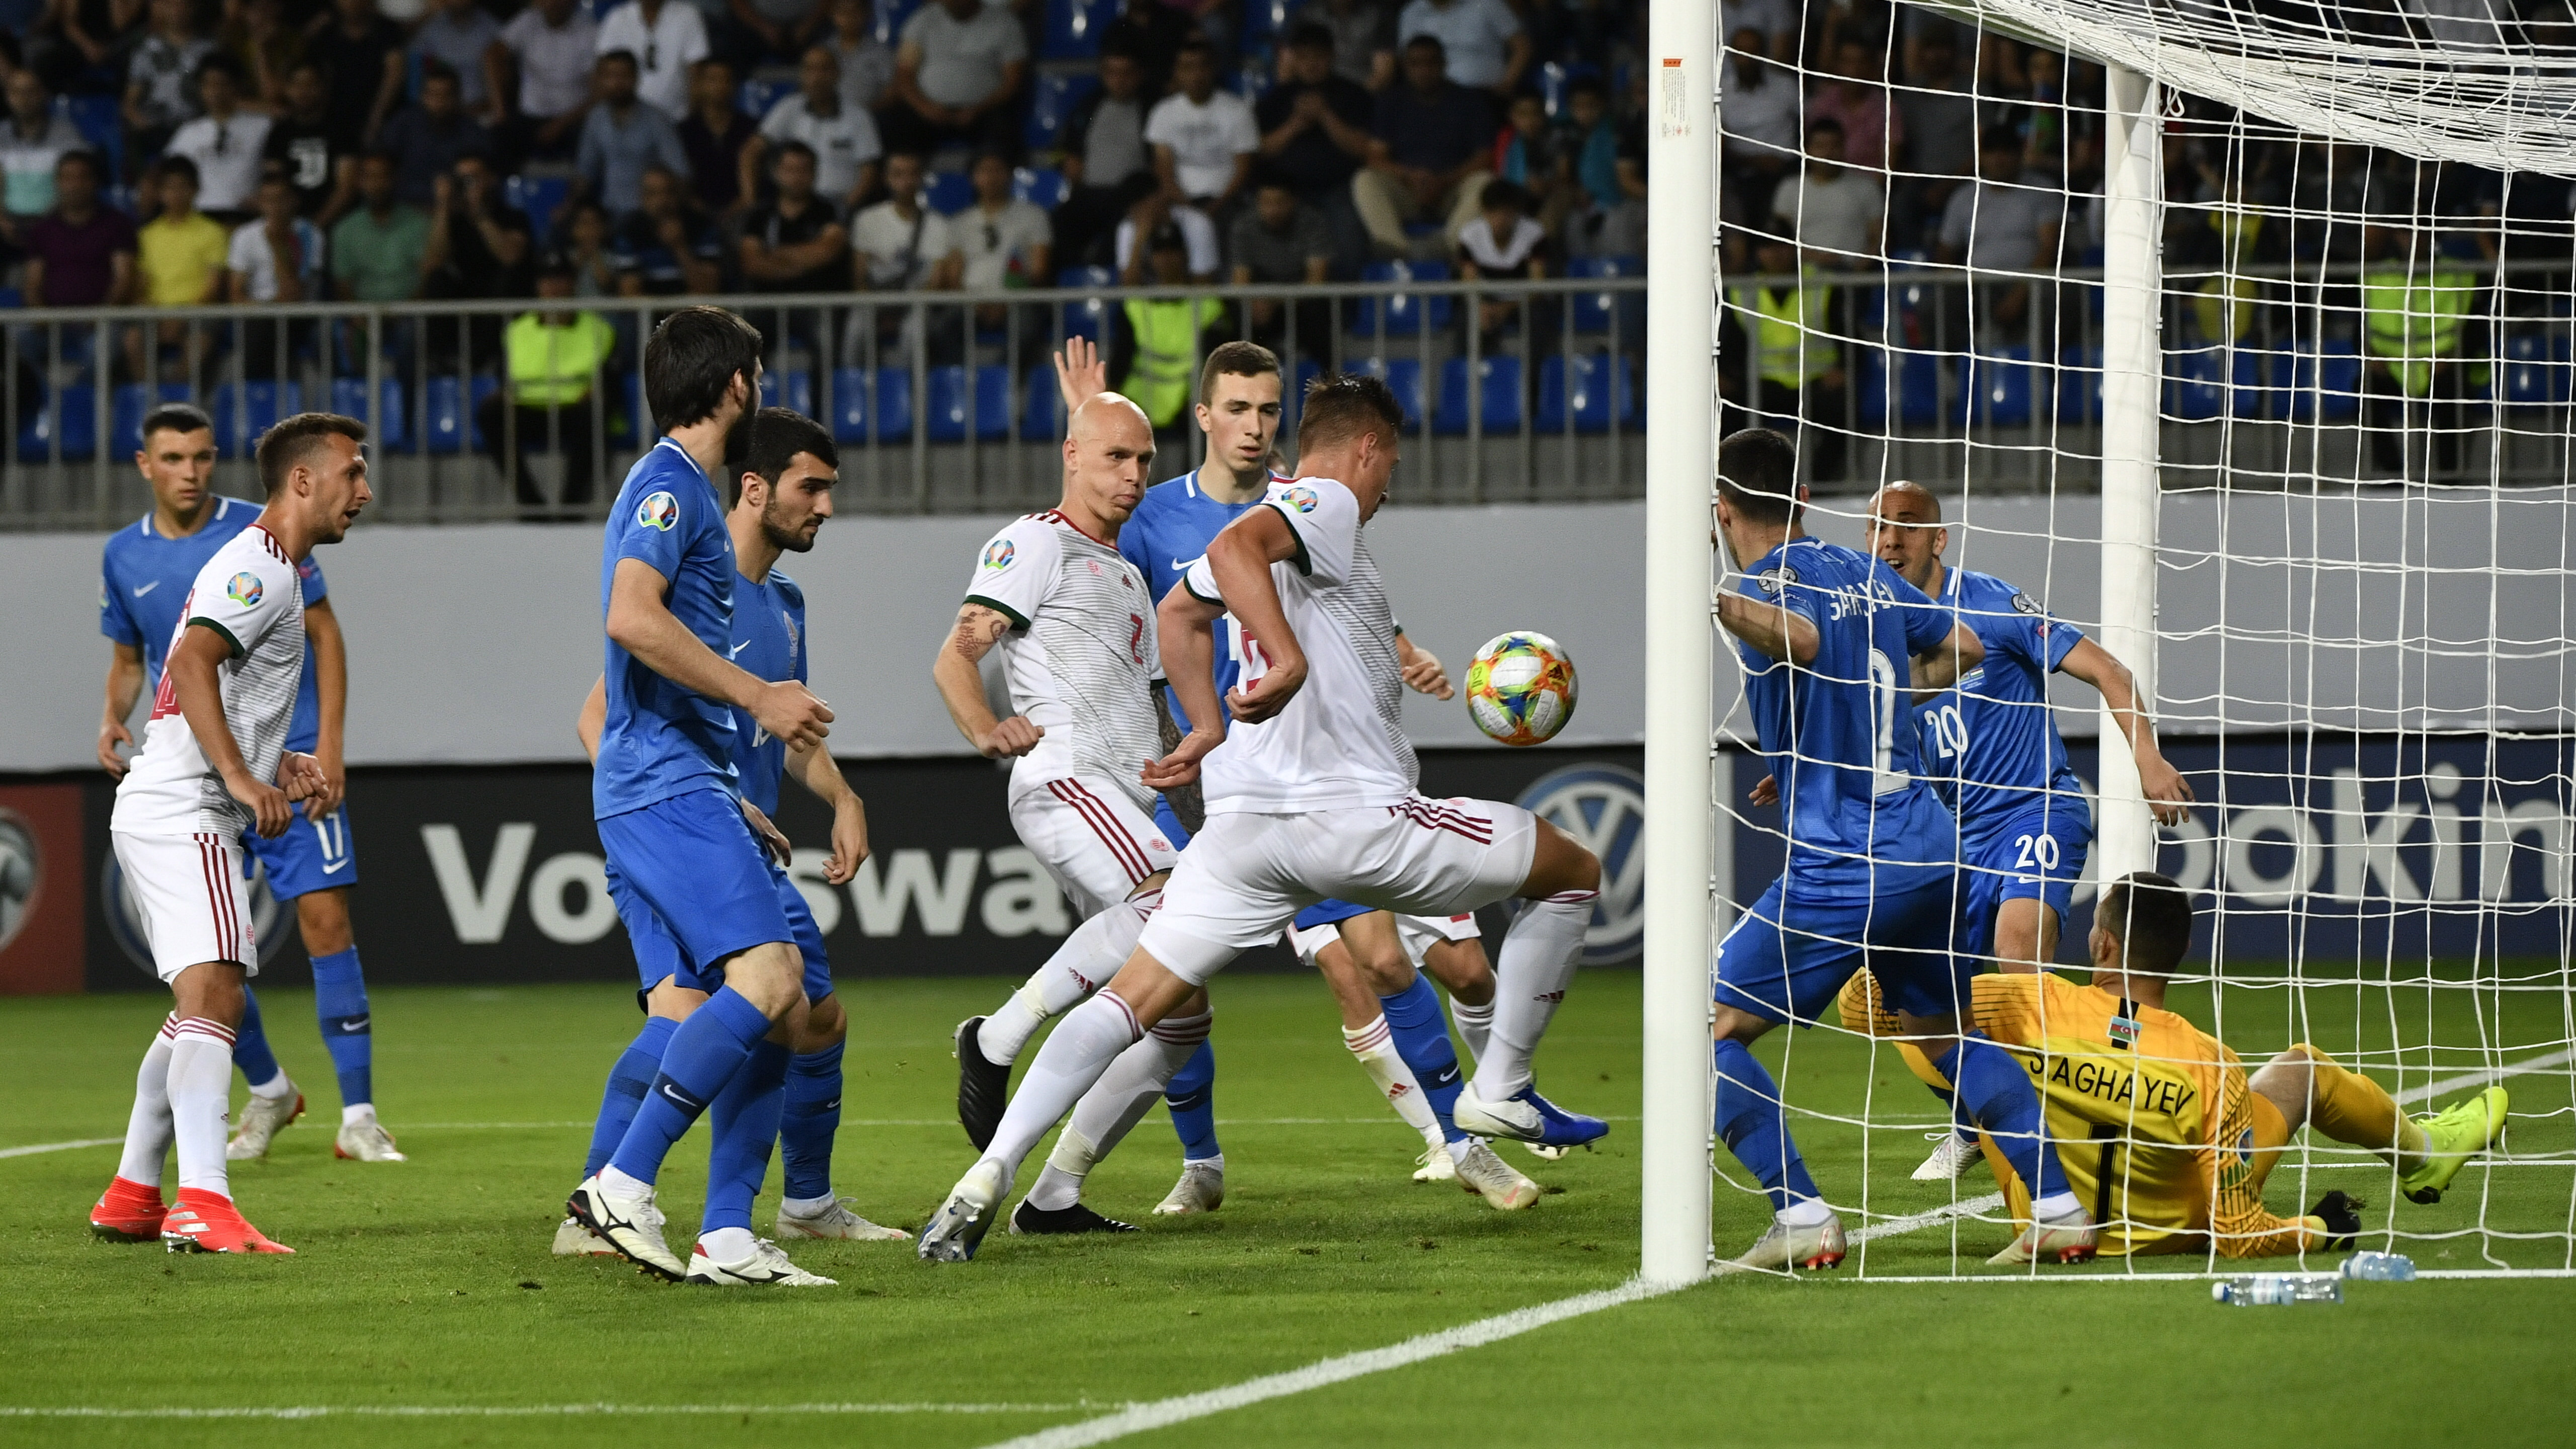 Azerbajdzsán - Magyarország: 1-3